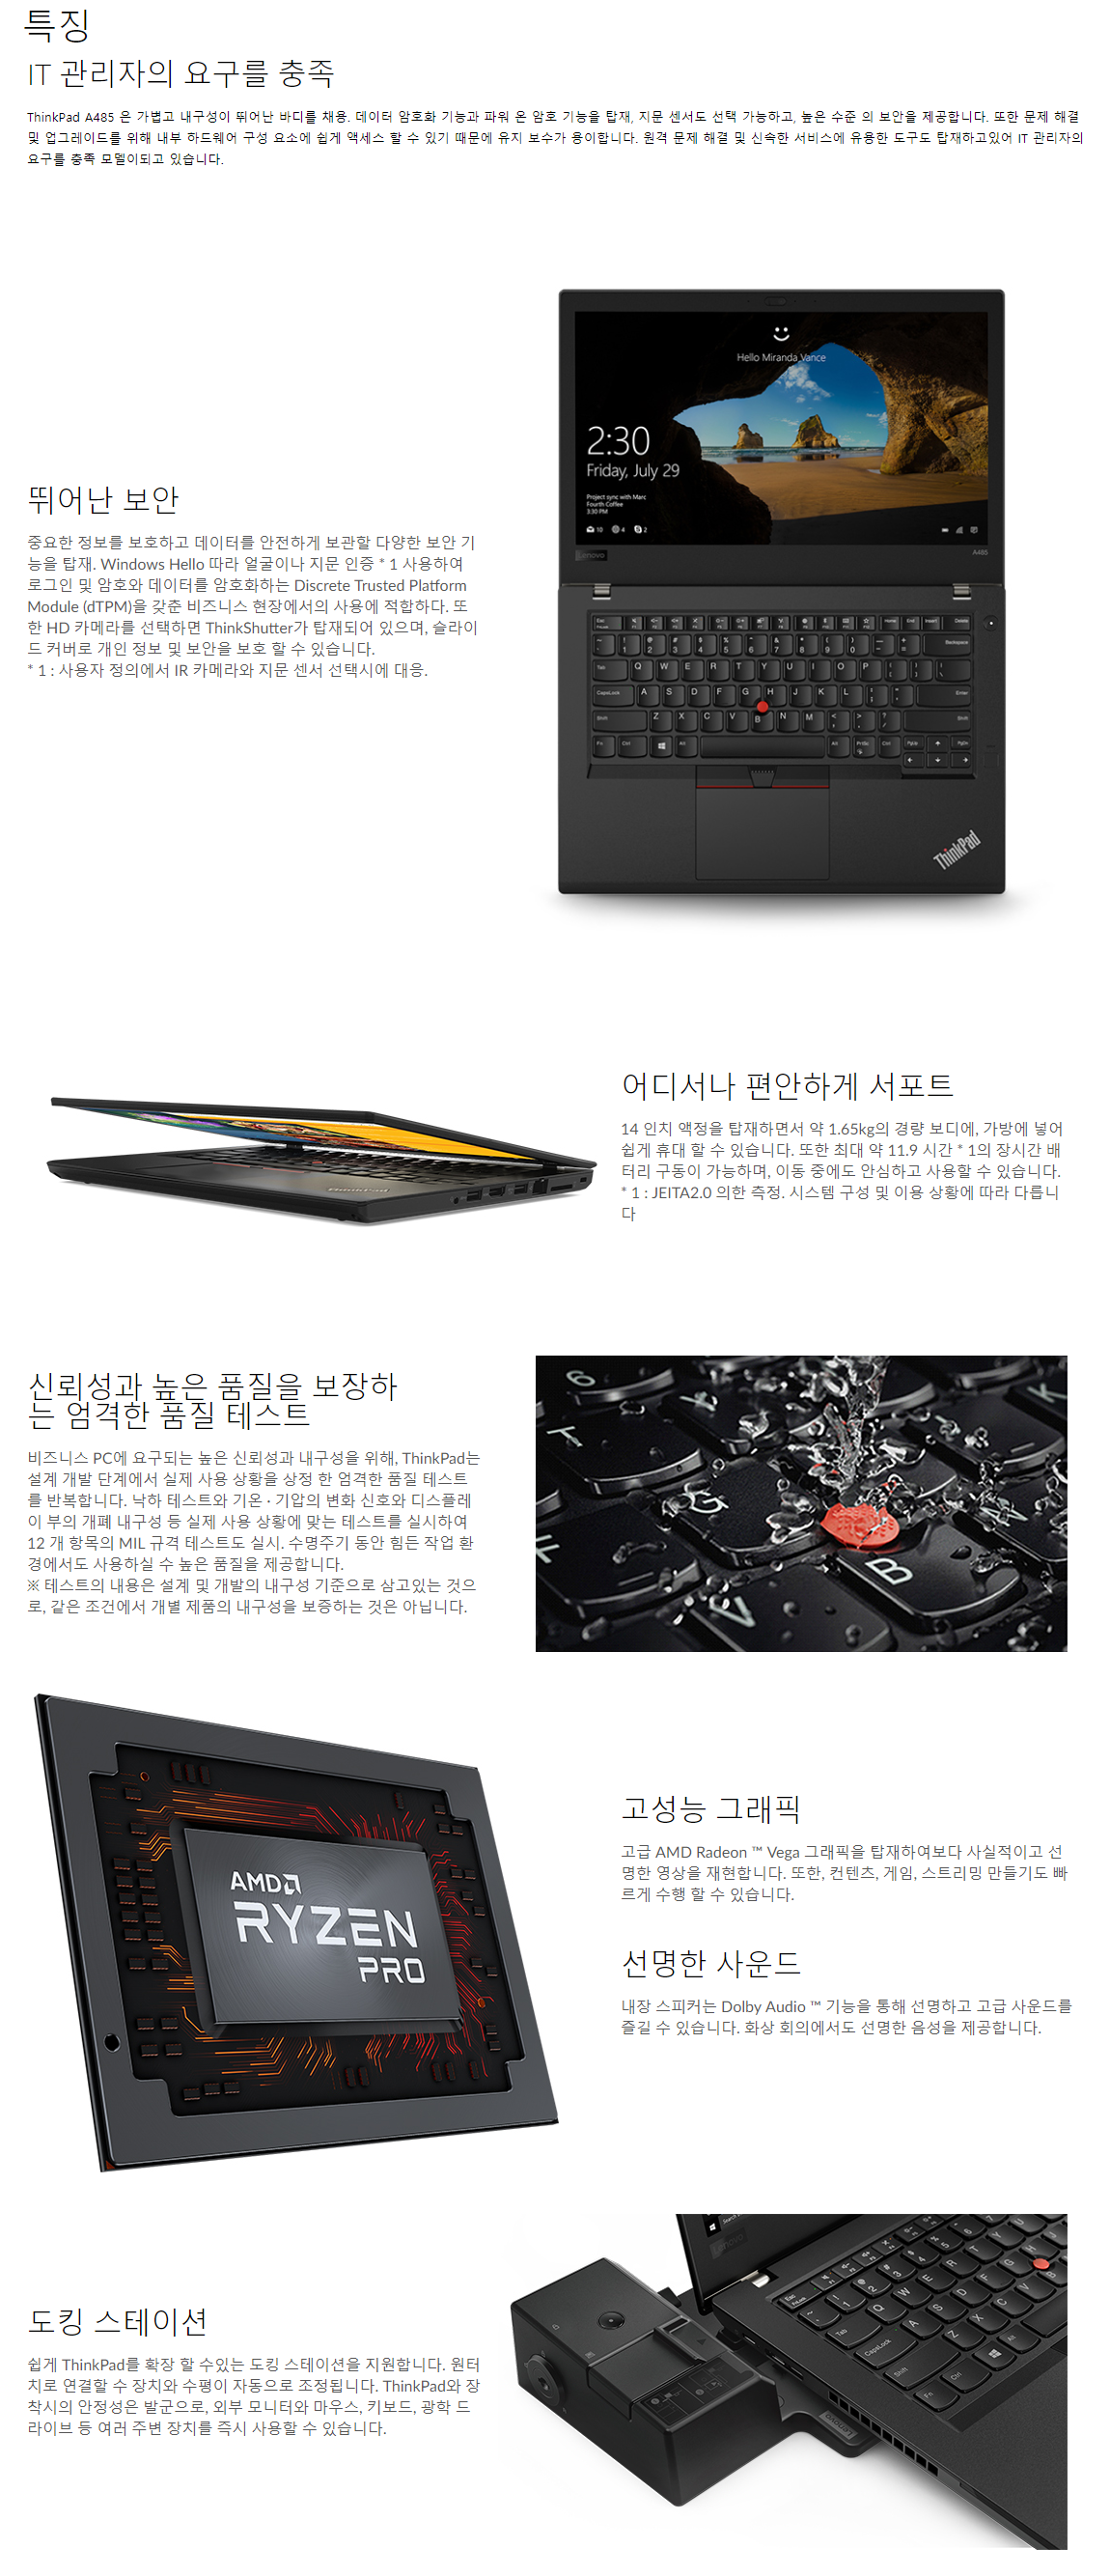 FireShot Capture 5 - Lenovo ThinkPad A485 I 비즈니스의 수준을 올리는 노_ - https___www.lenovo.com_jp_ja_notebo.png